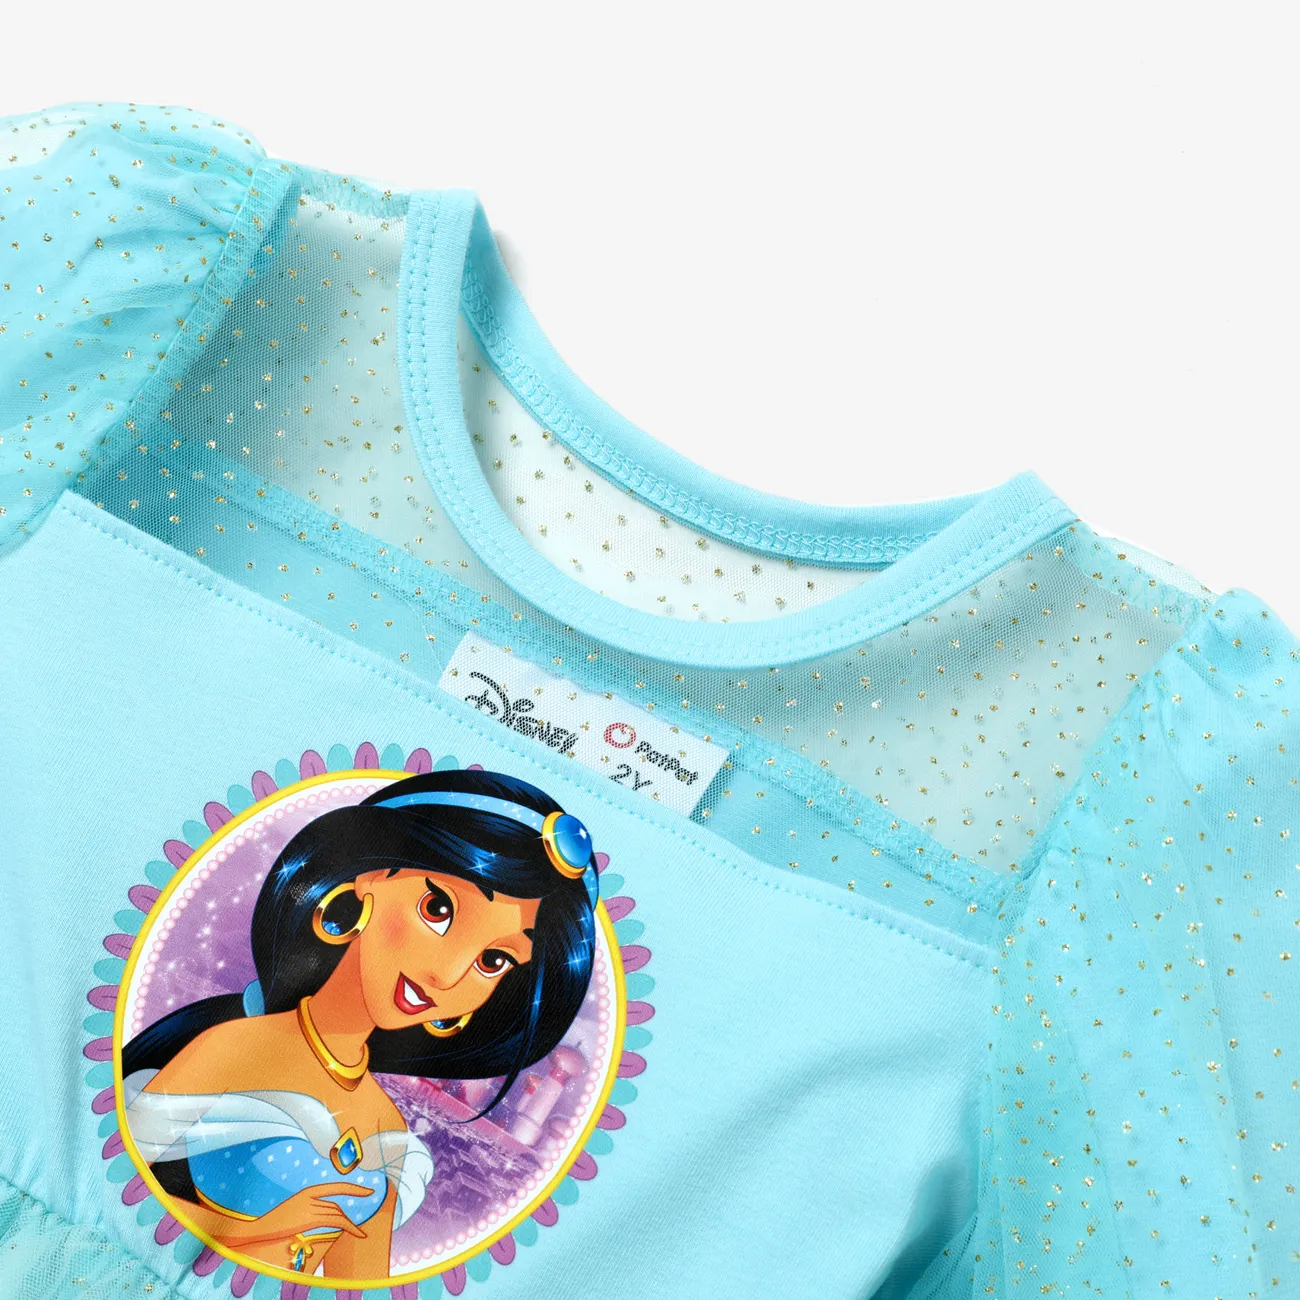 Disney Princess Día de la Madre Niño pequeño Chica Costura de tela Dulce Vestidos azul verde big image 1